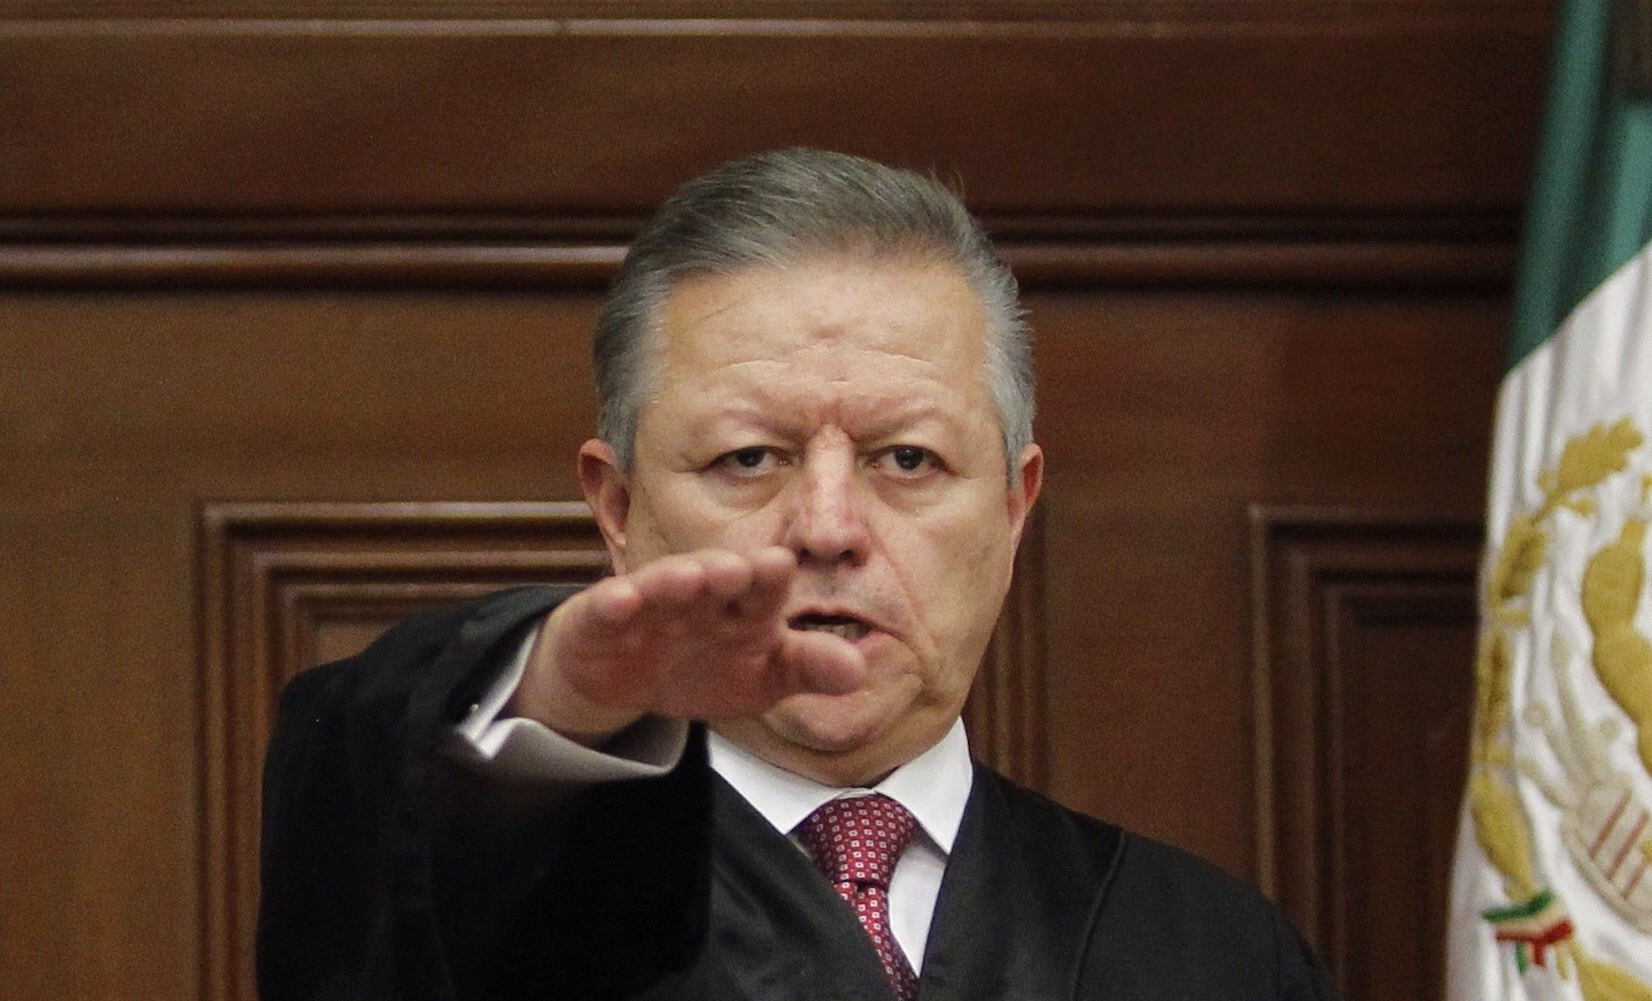  Promete Arturo Zaldívar “renovar el Poder Judicial” tras asumir presidencia de la SCJN